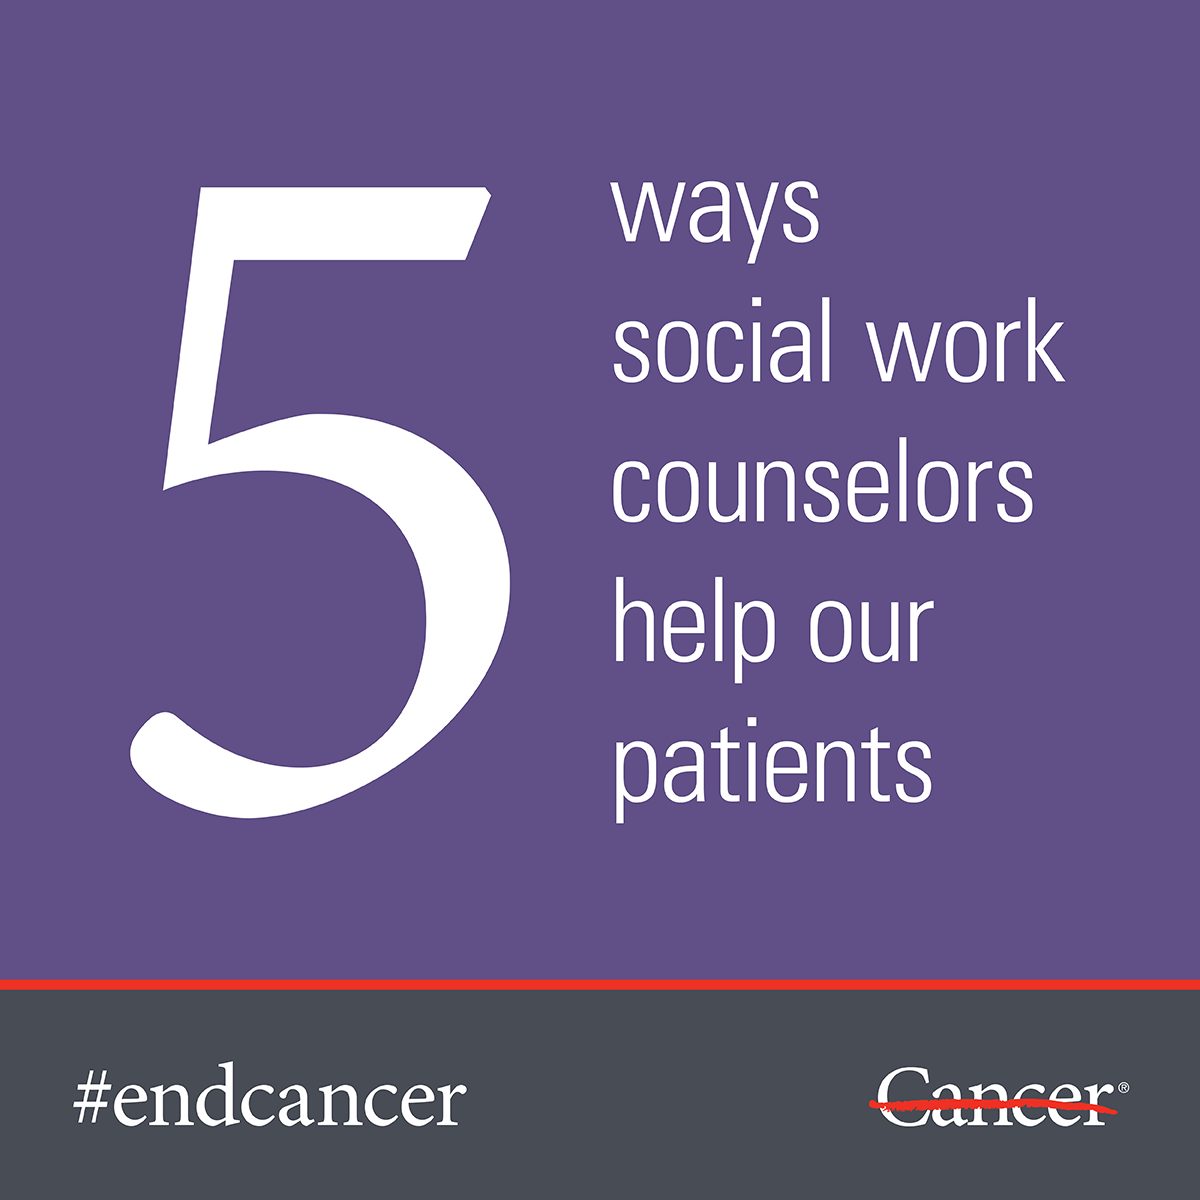 了解MD安德森社会工作顾问如何在癌症治疗期间提供帮助。